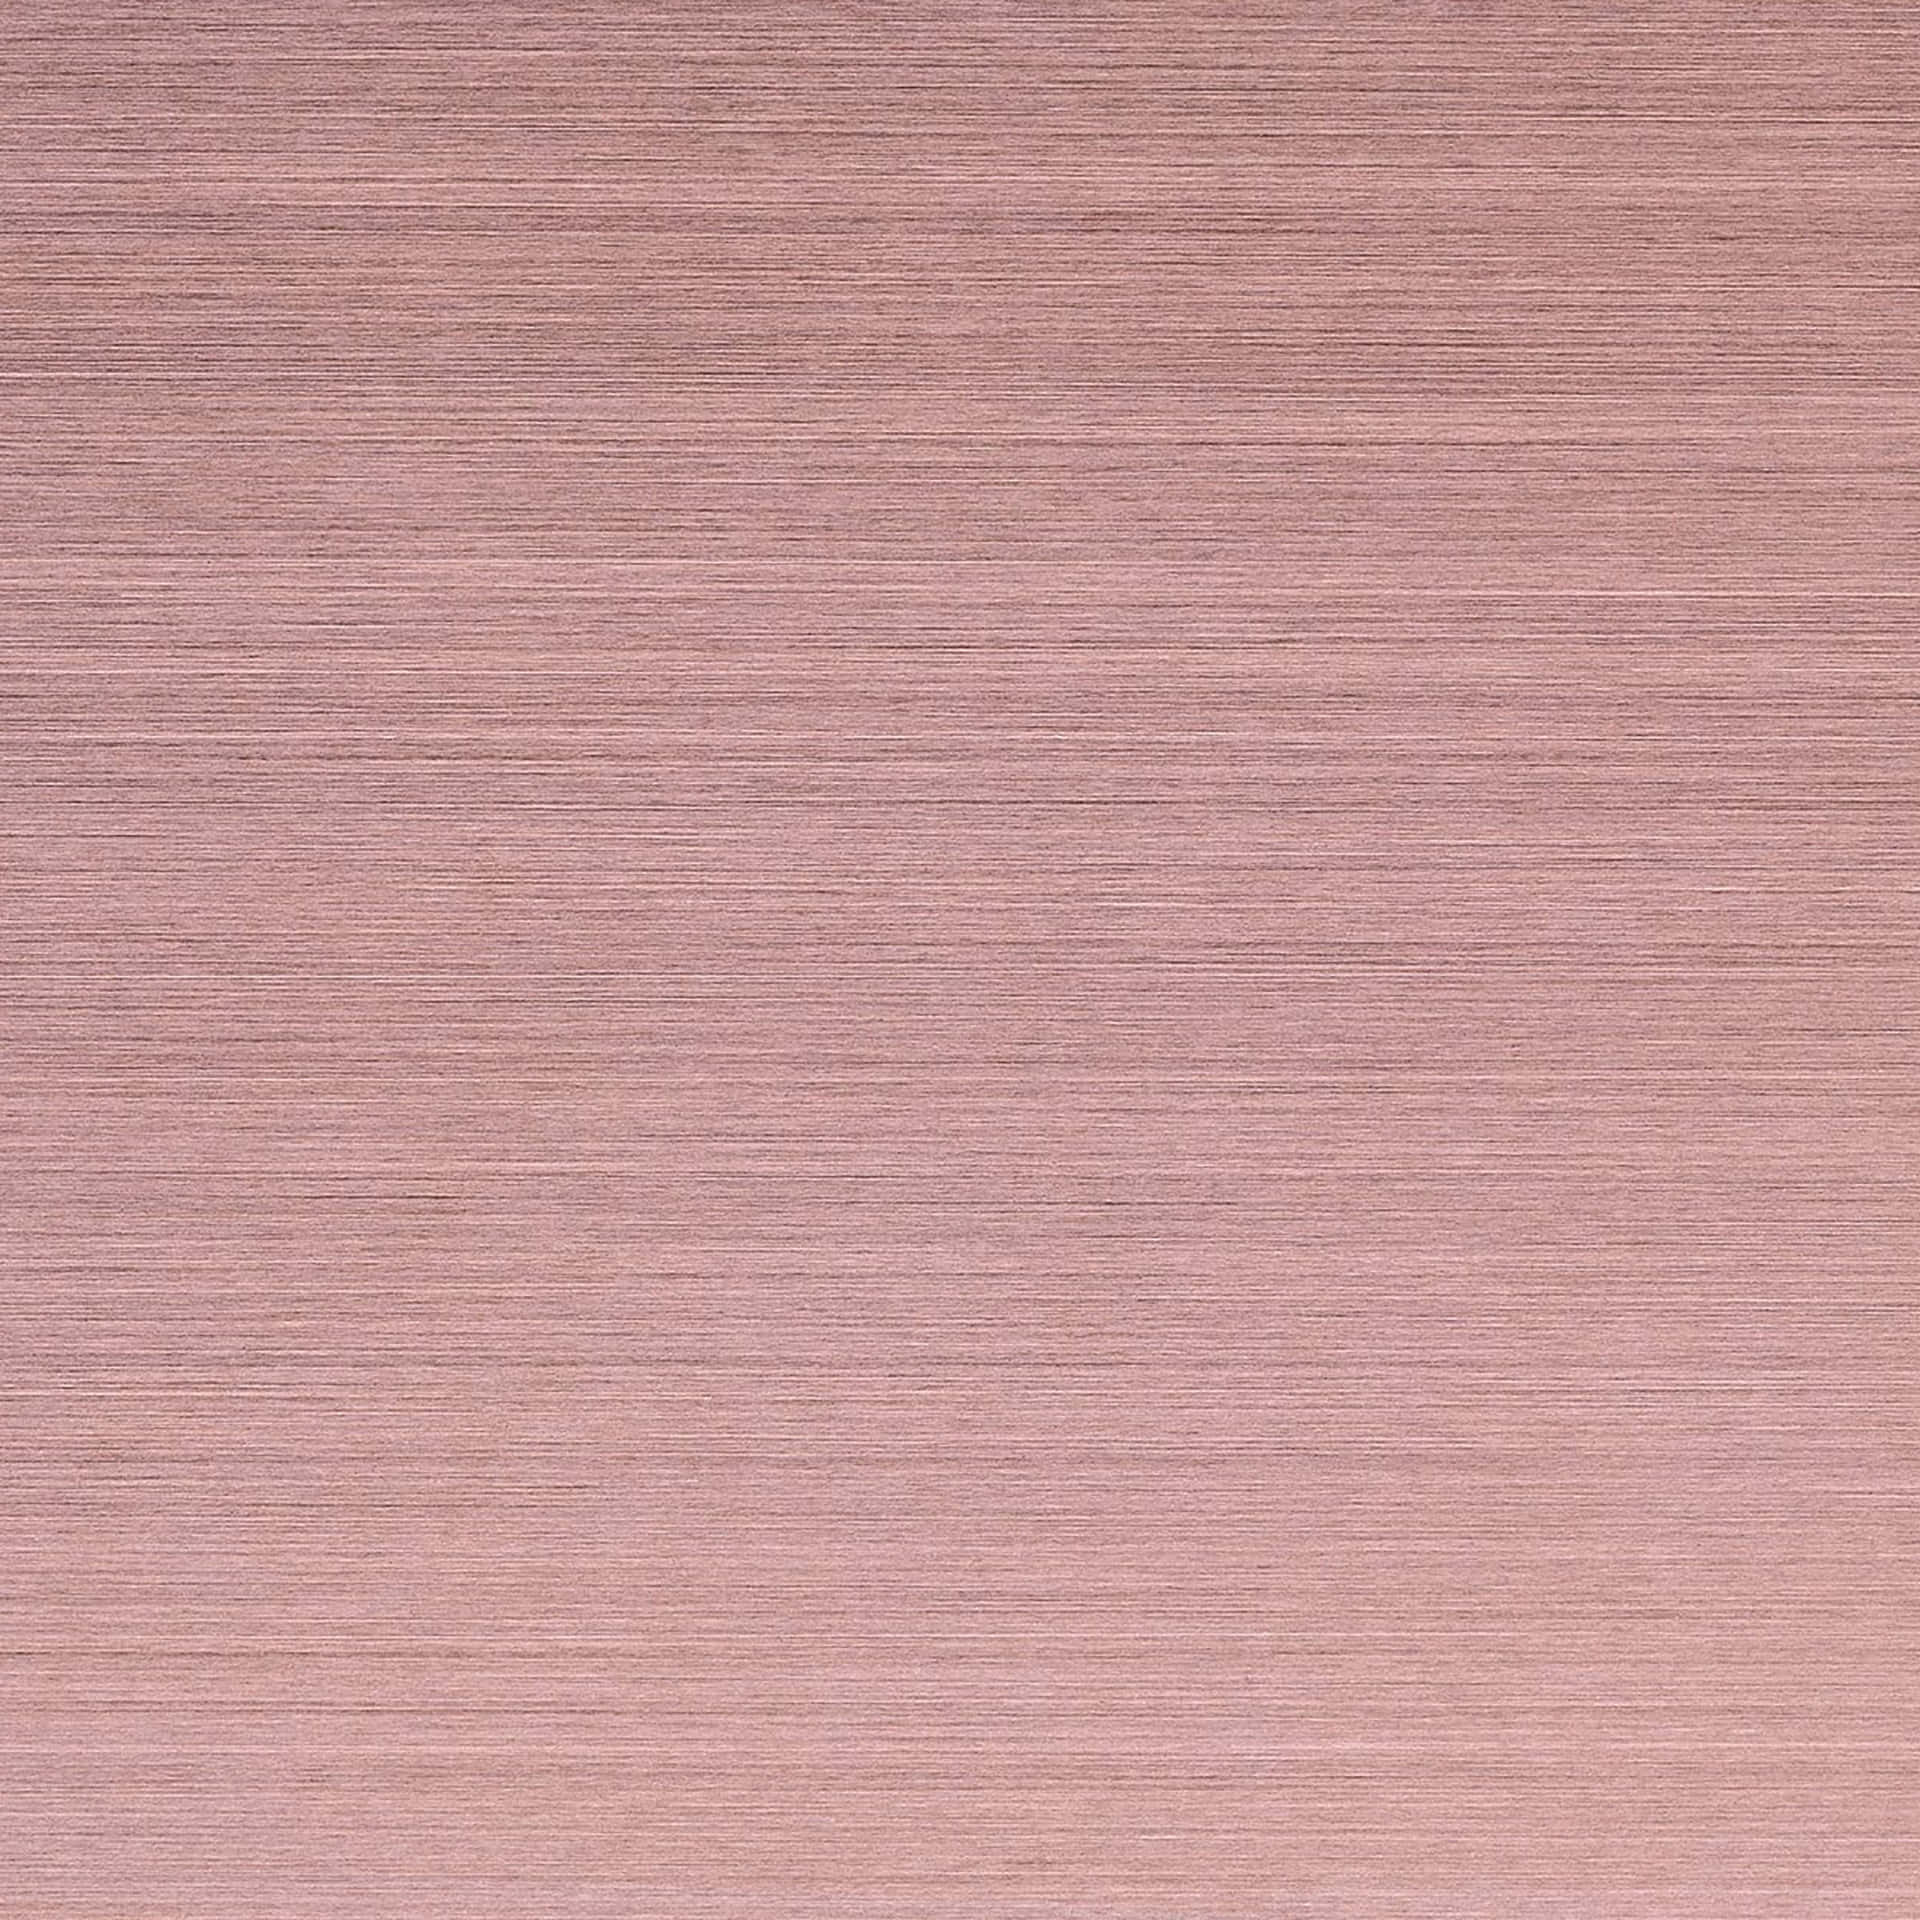 An Apple iPad in Beautiful Pink Wallpaper